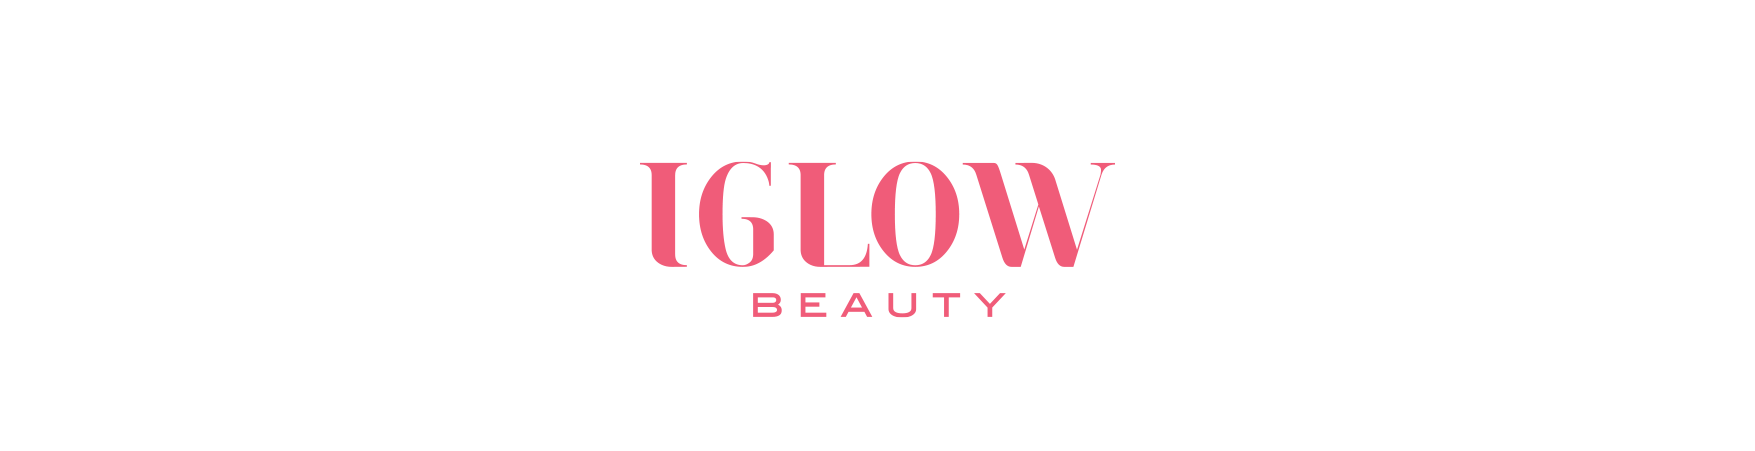 iGlow Beauty